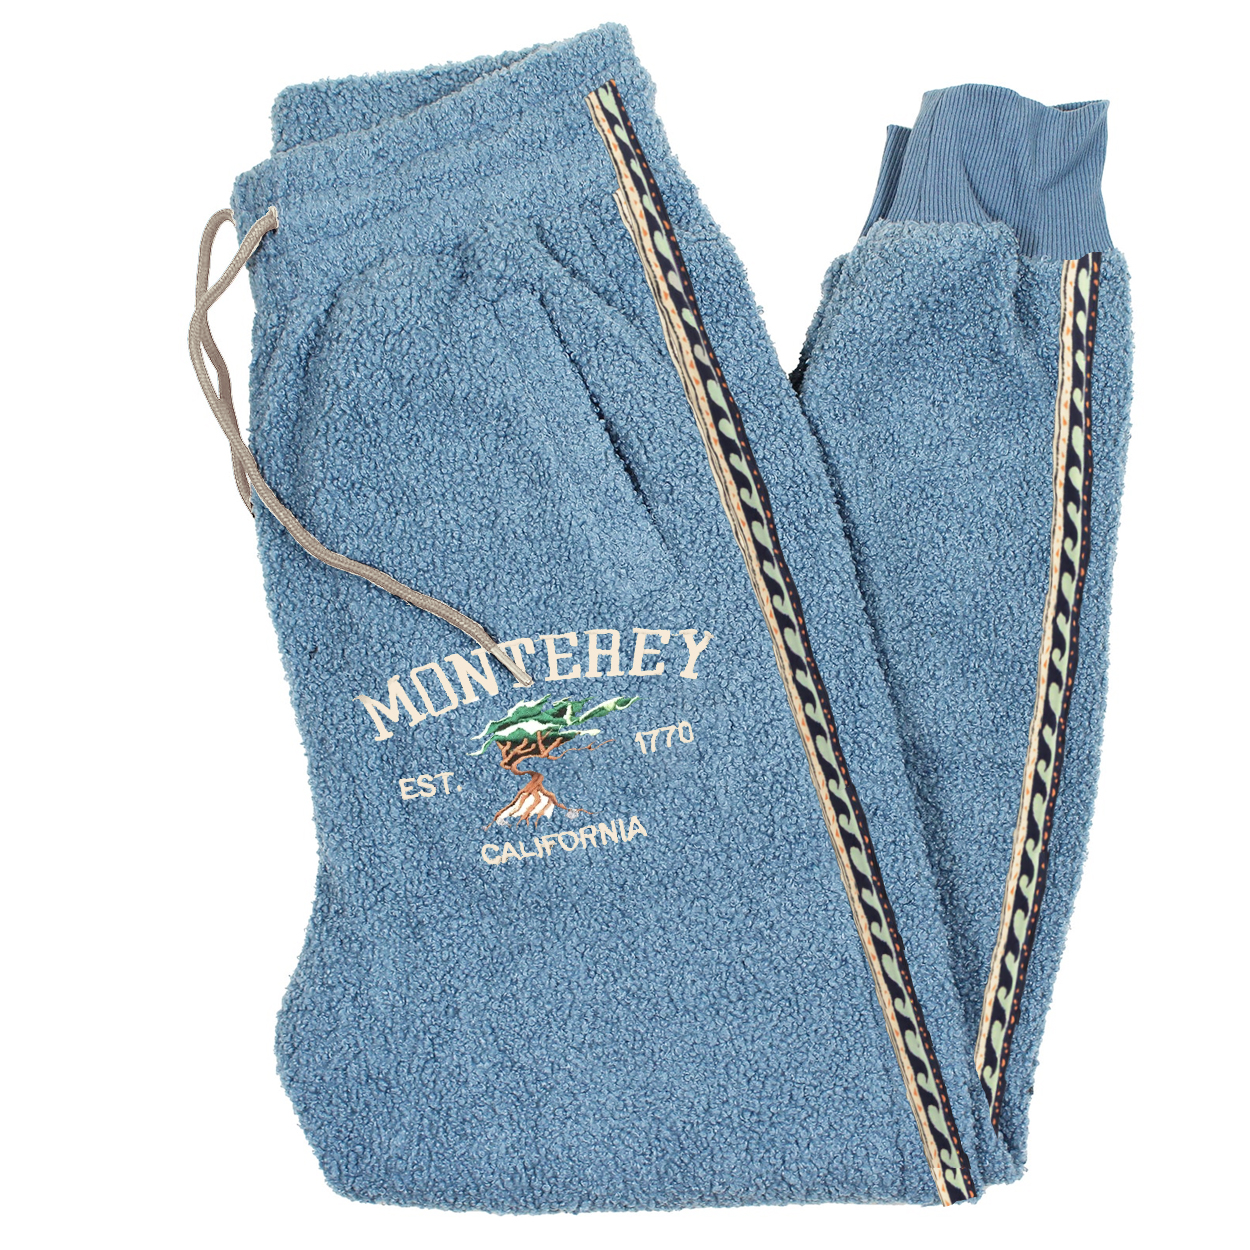 Unisex Vintage MONTEAEY Casual Fleece Sweatpants Lixishop 